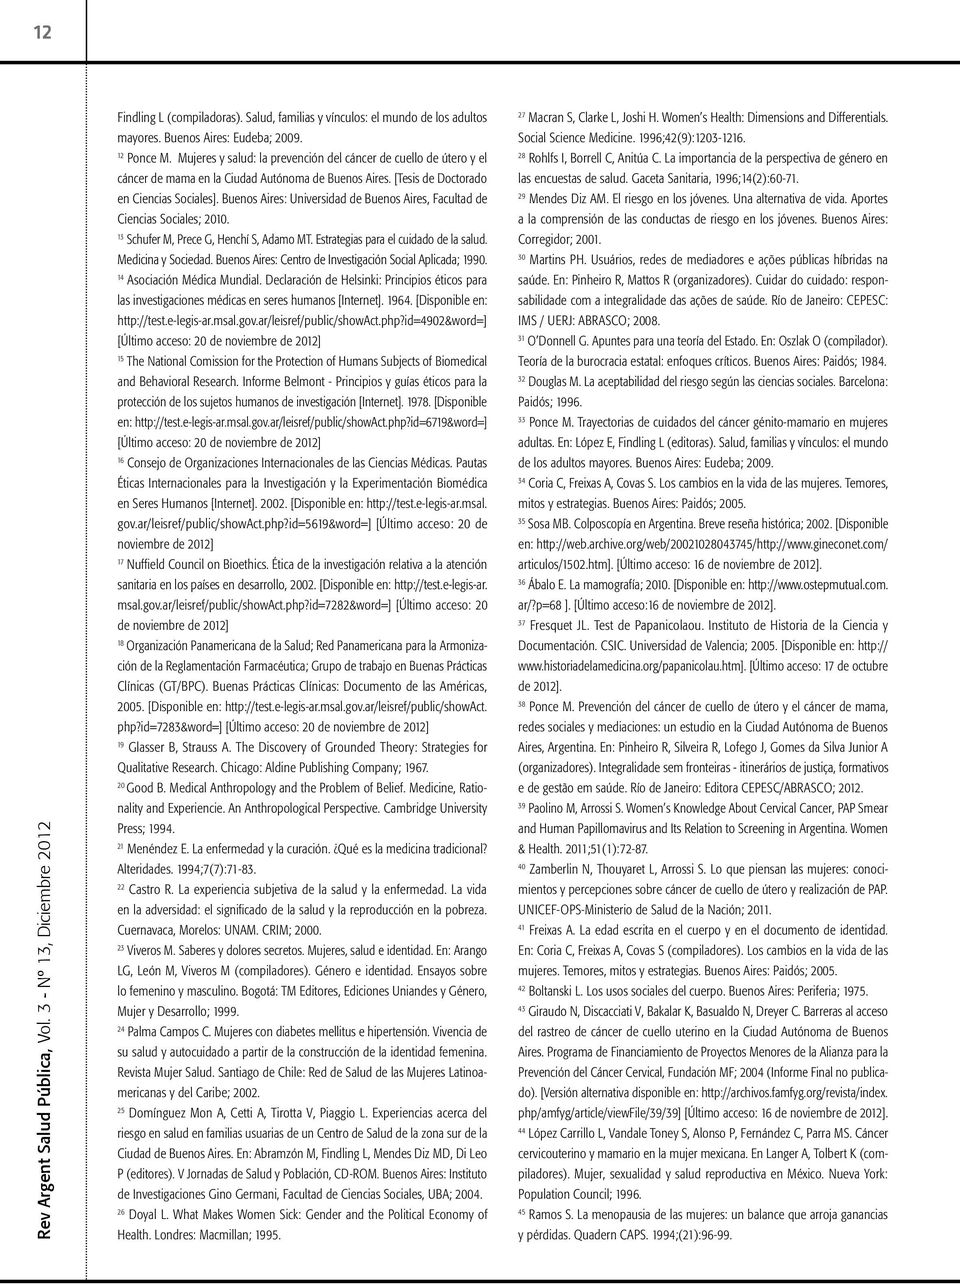 28 Rohlfs I, Borrell C, Anitúa C. La importancia de la perspectiva de género en Rev Argent Salud Pública, Vol. 3 - Nº 13, Diciembre 2012 cáncer de mama en la Ciudad Autónoma de Buenos Aires.